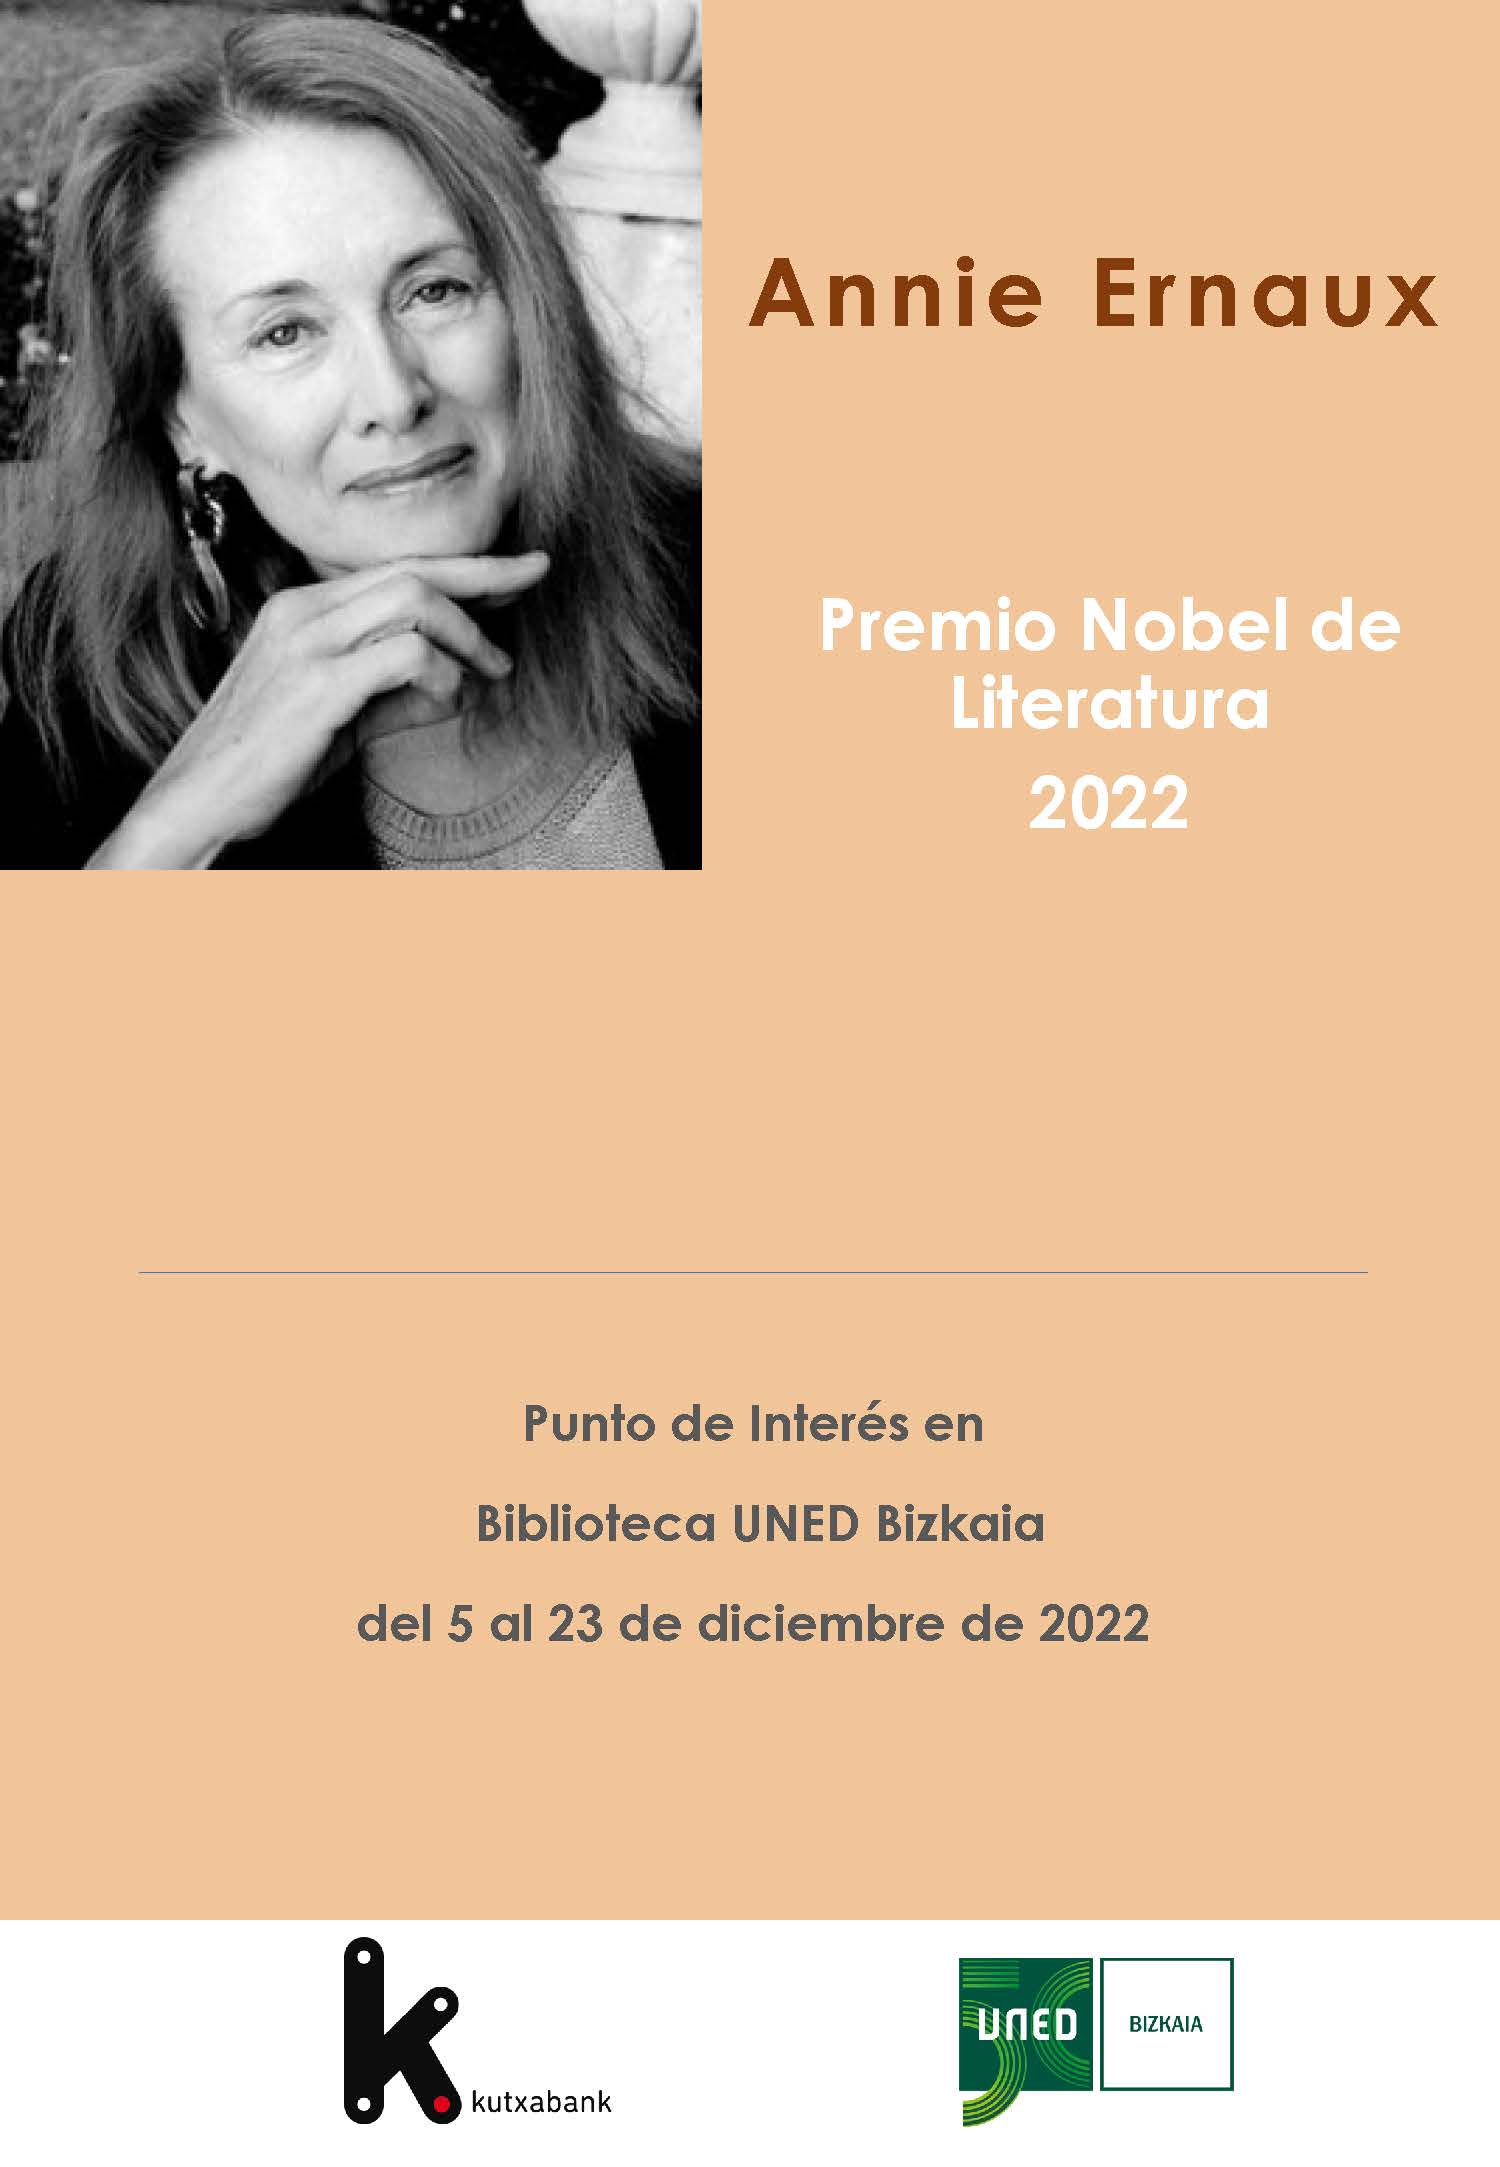 Imagen Dosier Annie Ernaux, Premio Nobel de Literatura 2022